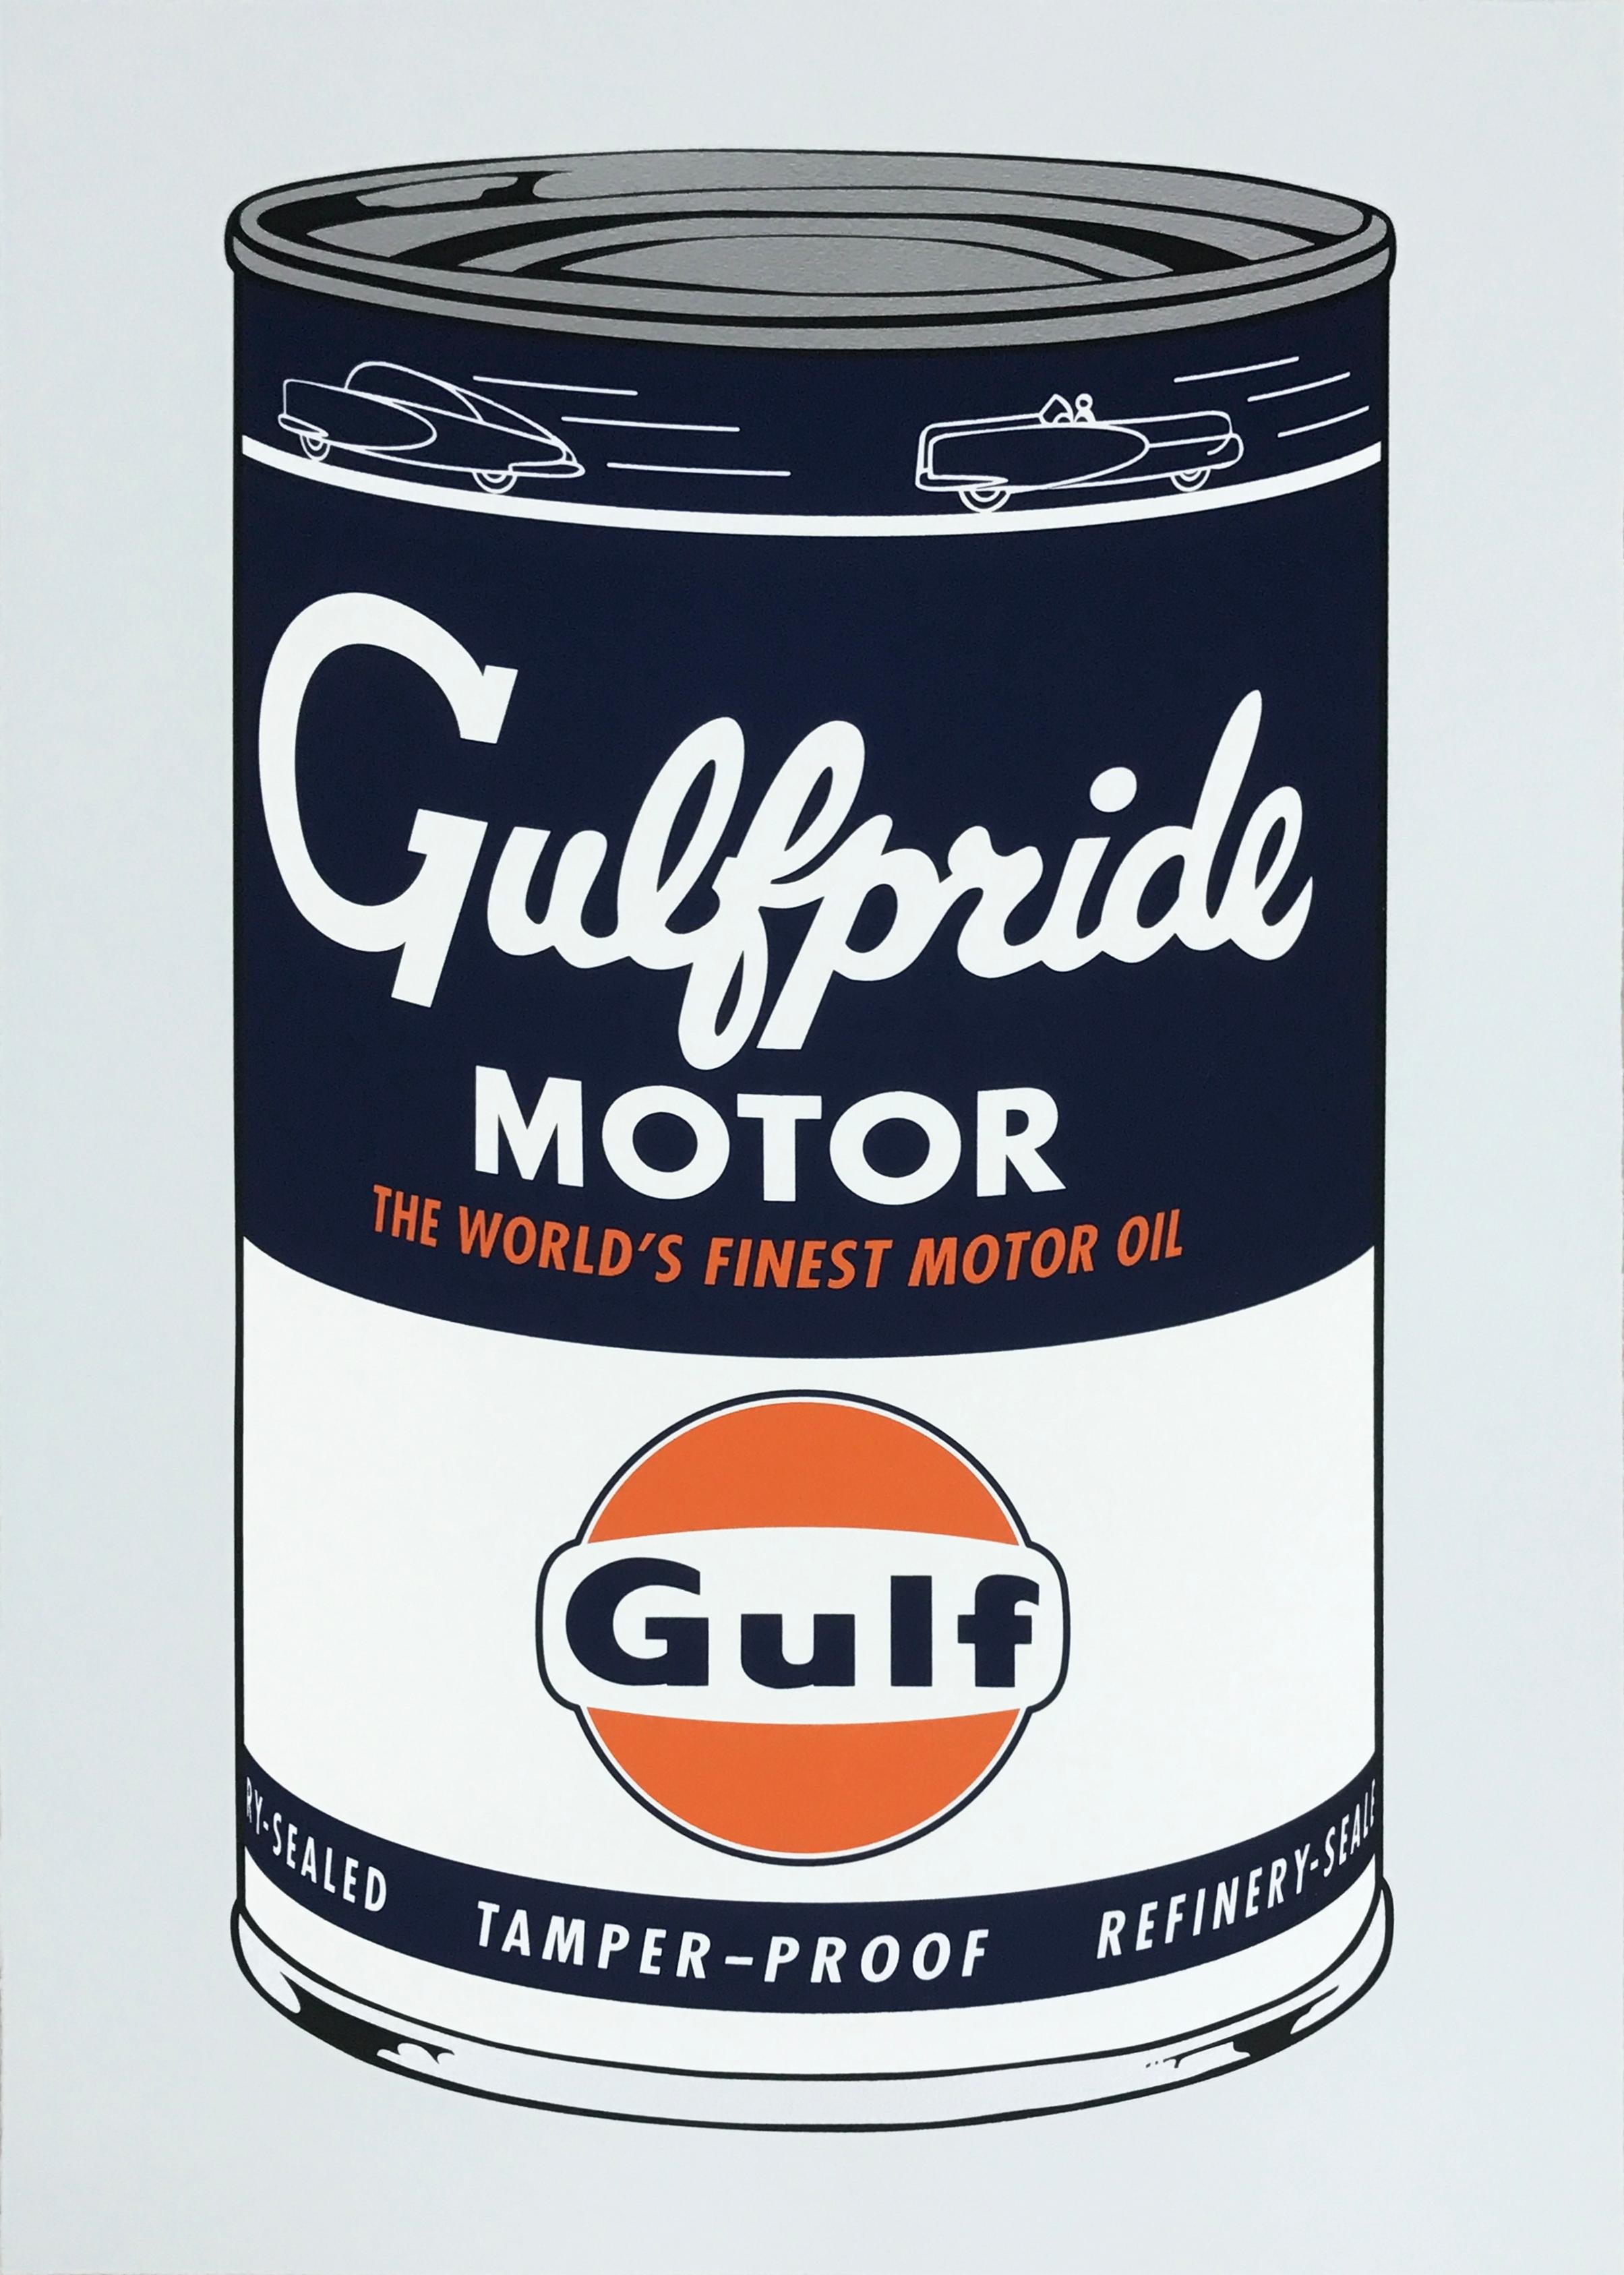 Gulf Pride Motors - Print by Heiner Meyer